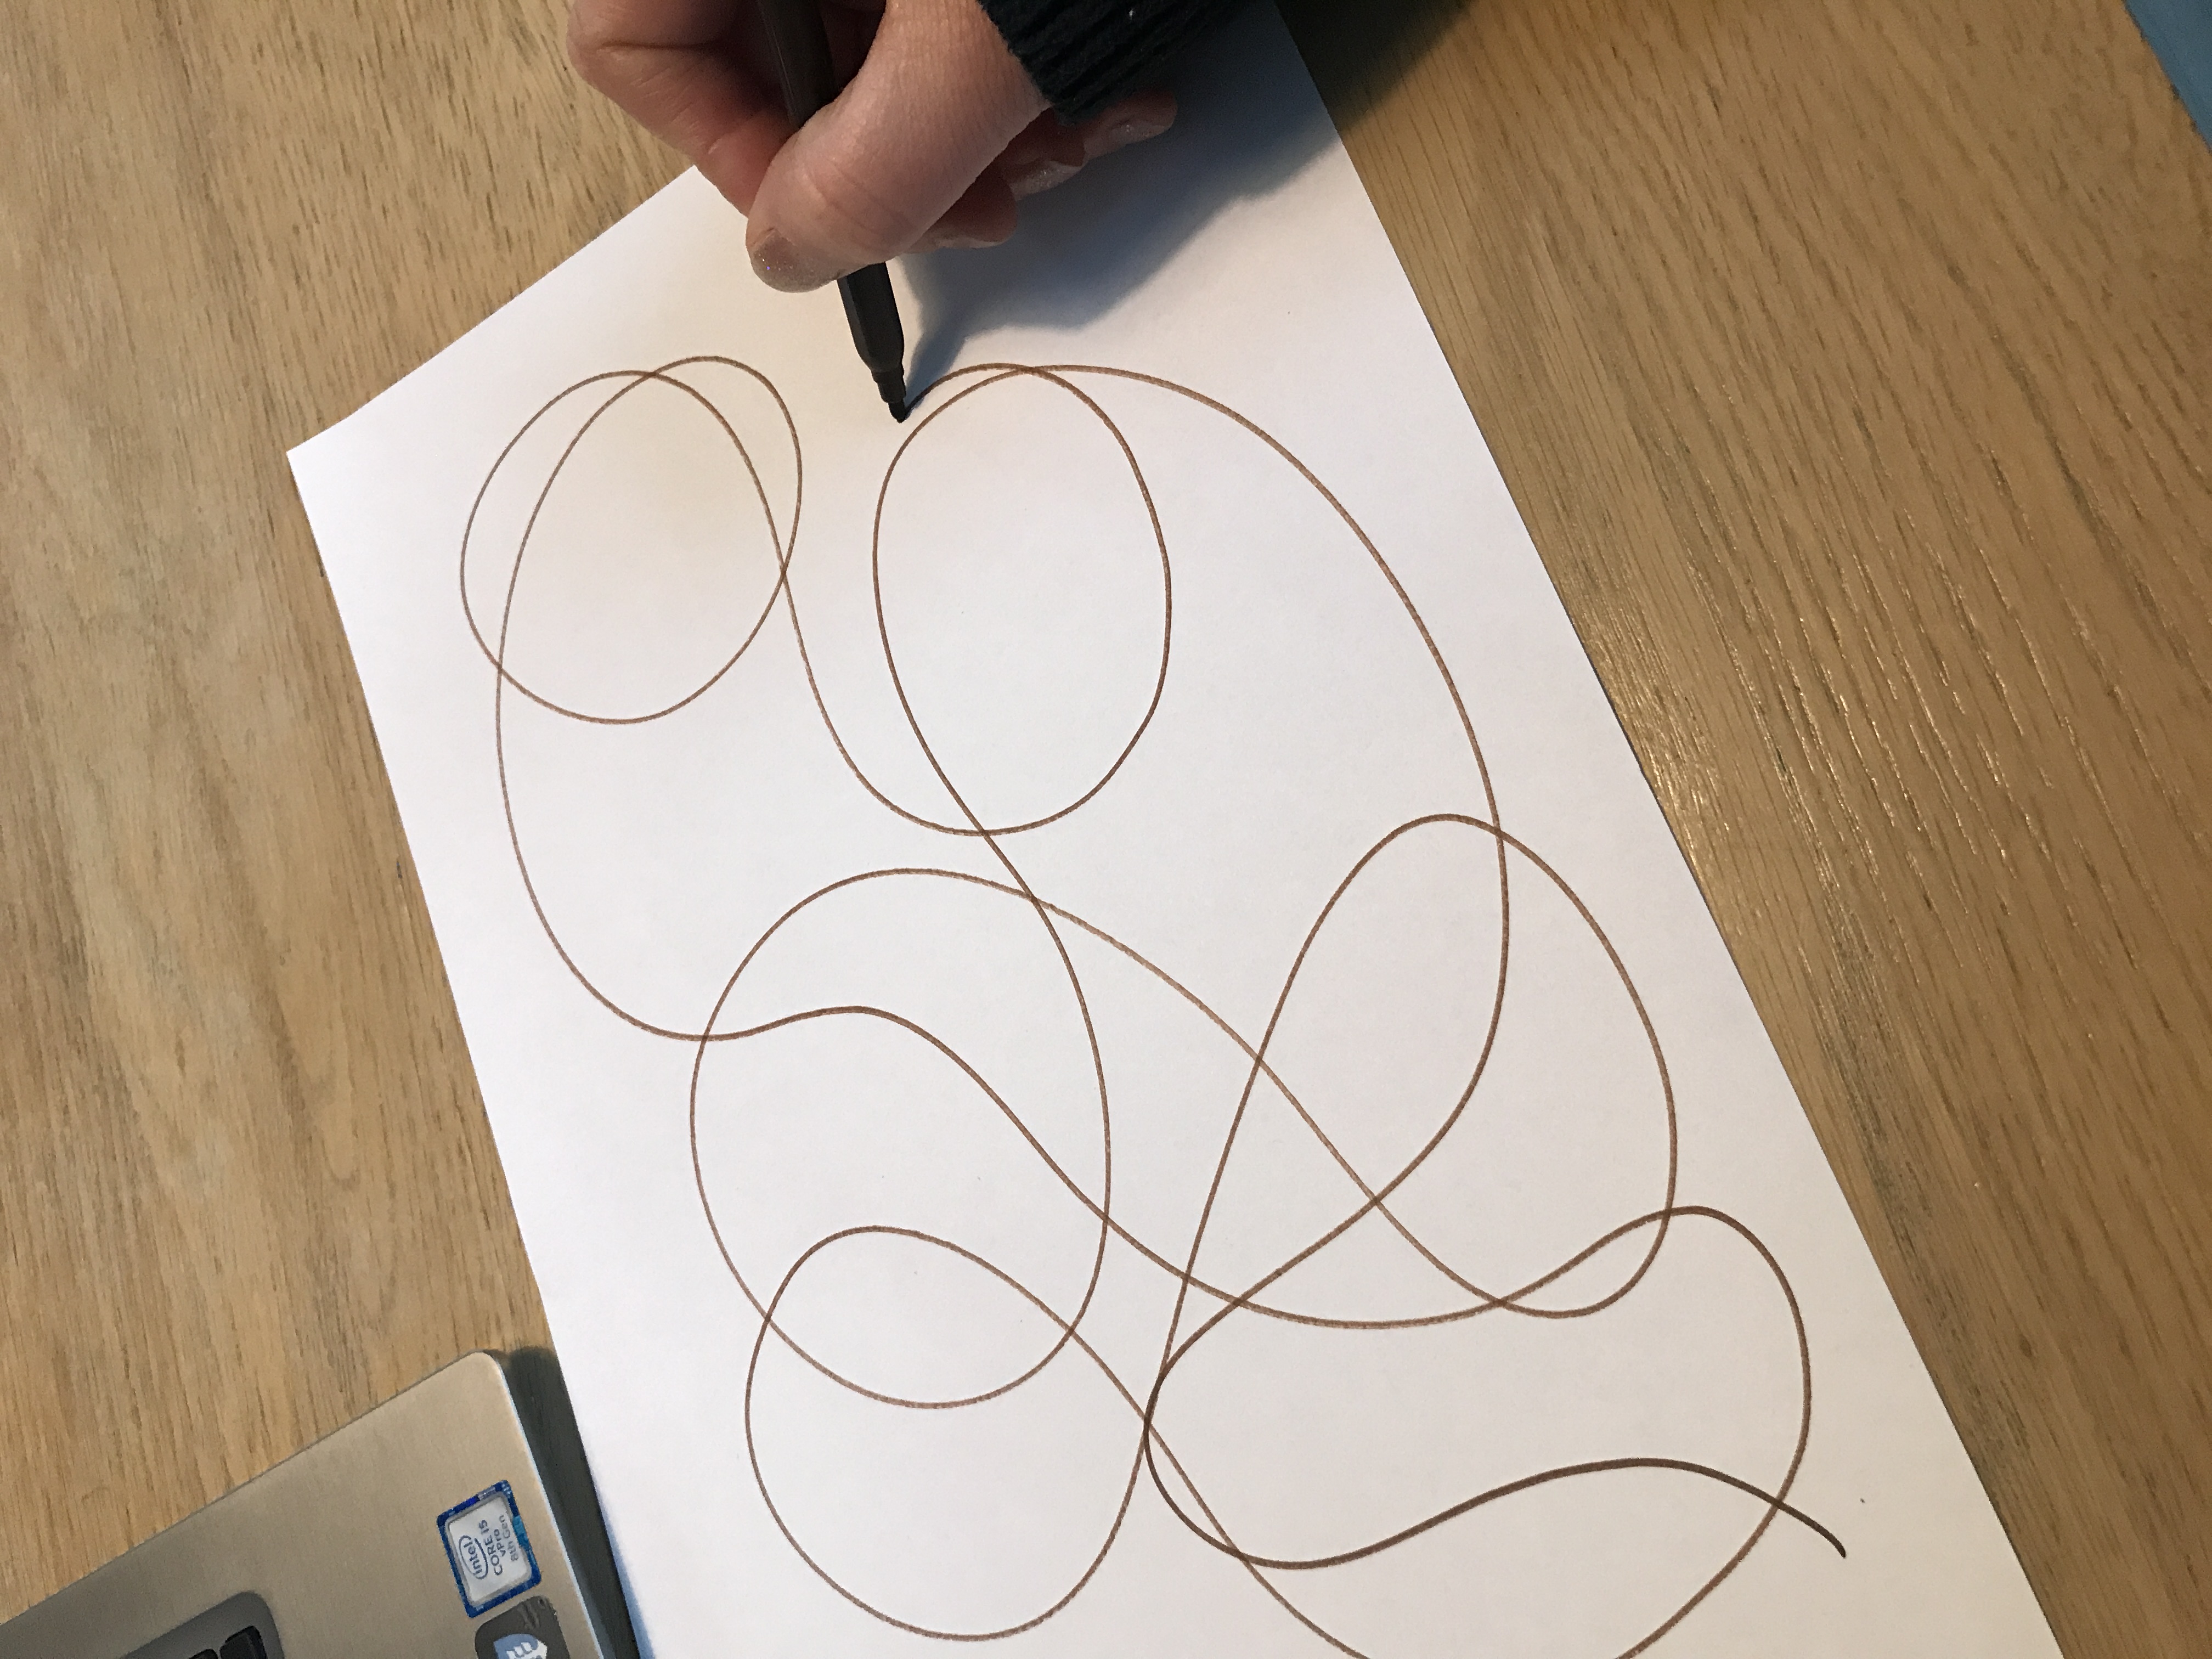 En hånd tegner kruseduller med blyant på papir. Foto